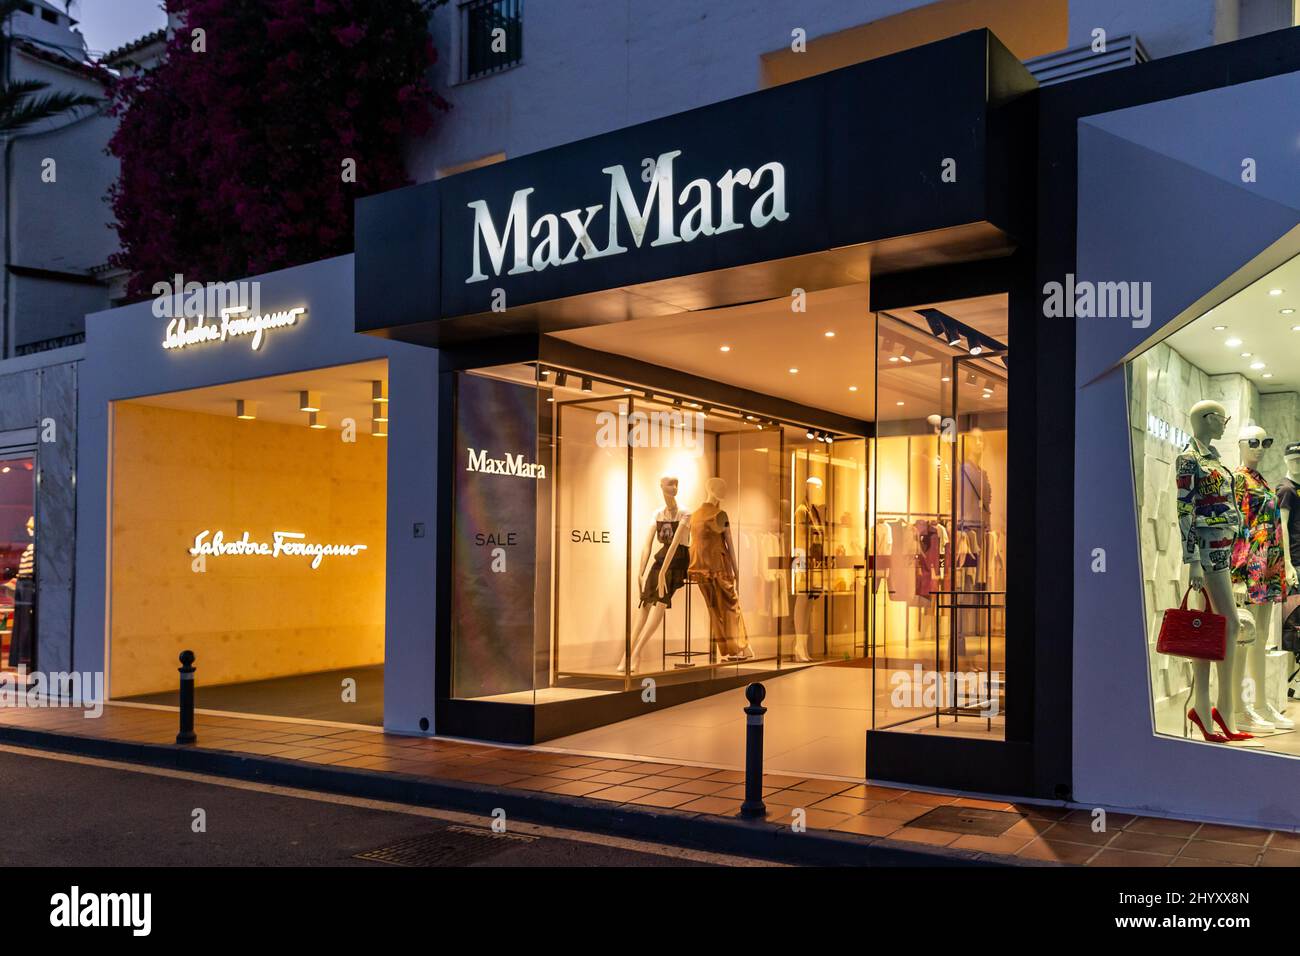 Photographie de nuit dans le luxe et célèbre emplacement de Marbella - baie de Puerto Banus. Vue sur le magasin Max Mara, dans la zone commerçante du port. Banque D'Images